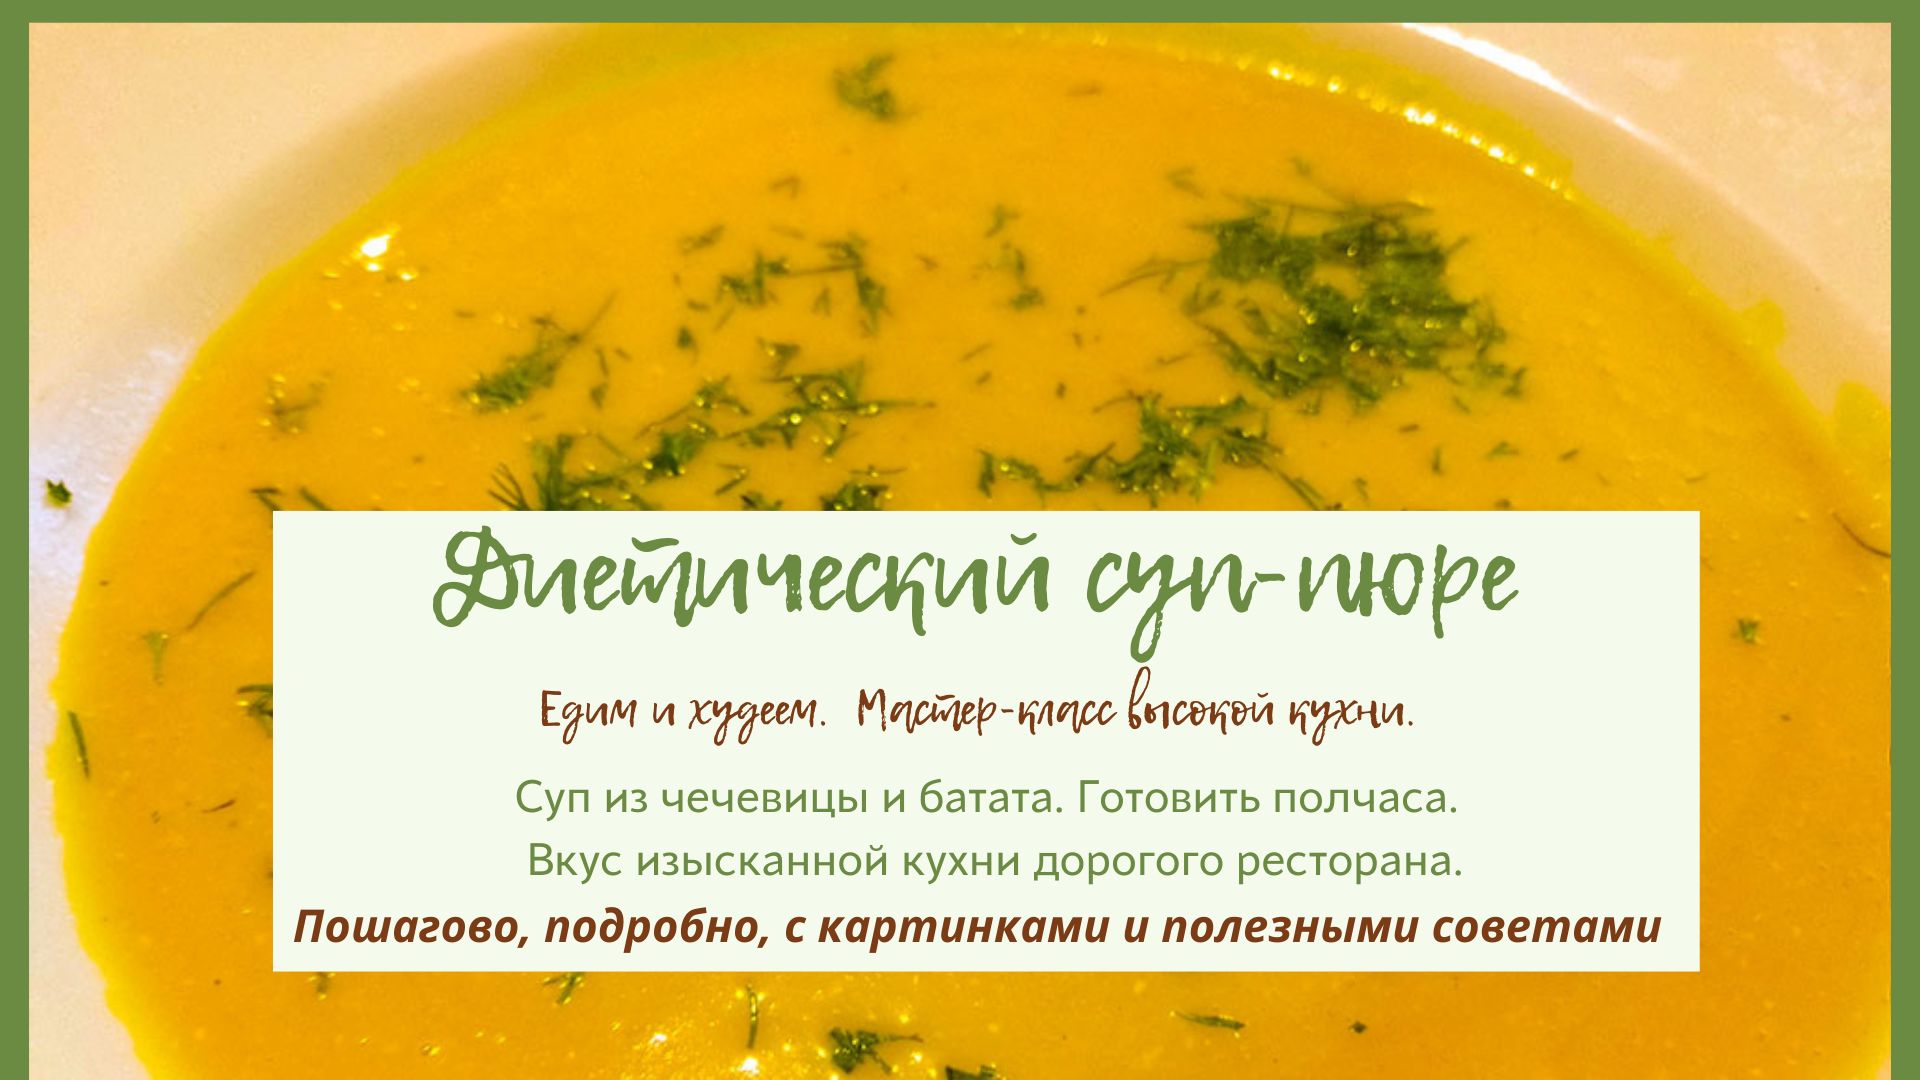 Рецепт супа-пюре для тех, кто хочет похудеть. Вкусно и полезно. Пошаговый урок с картинками.